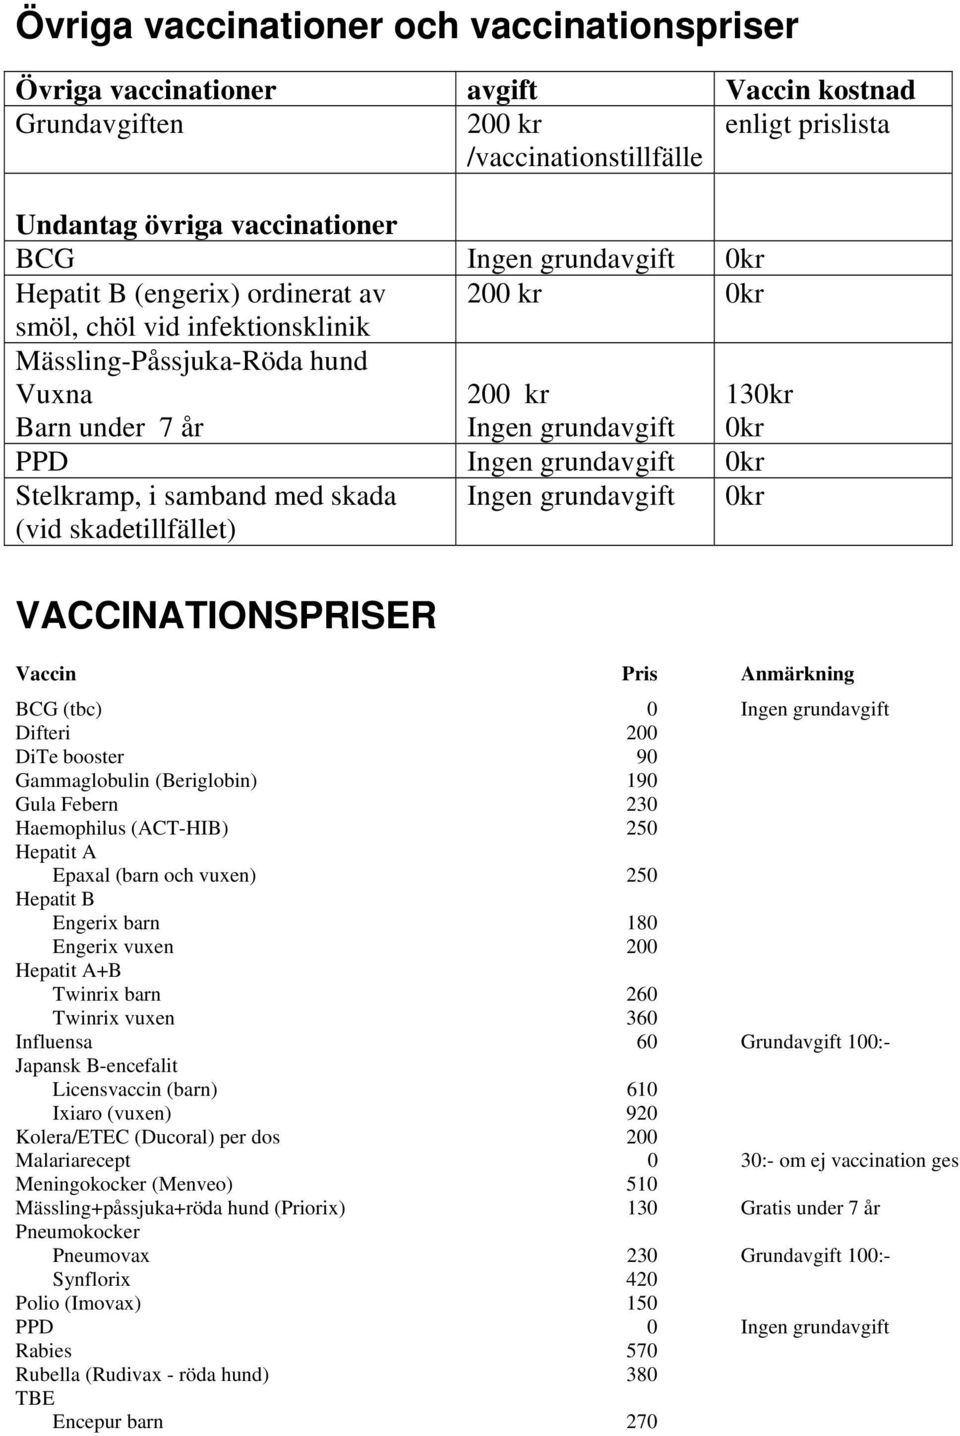 skada (vid skadetillfället) Ingen grundavgift kr VACCINATIONSPRISER Vaccin Pris Anmärkning BCG (tbc) Ingen grundavgift Difteri DiTe booster 9 Gammaglobulin (Beriglobin) 19 Gula Febern 23 Haemophilus